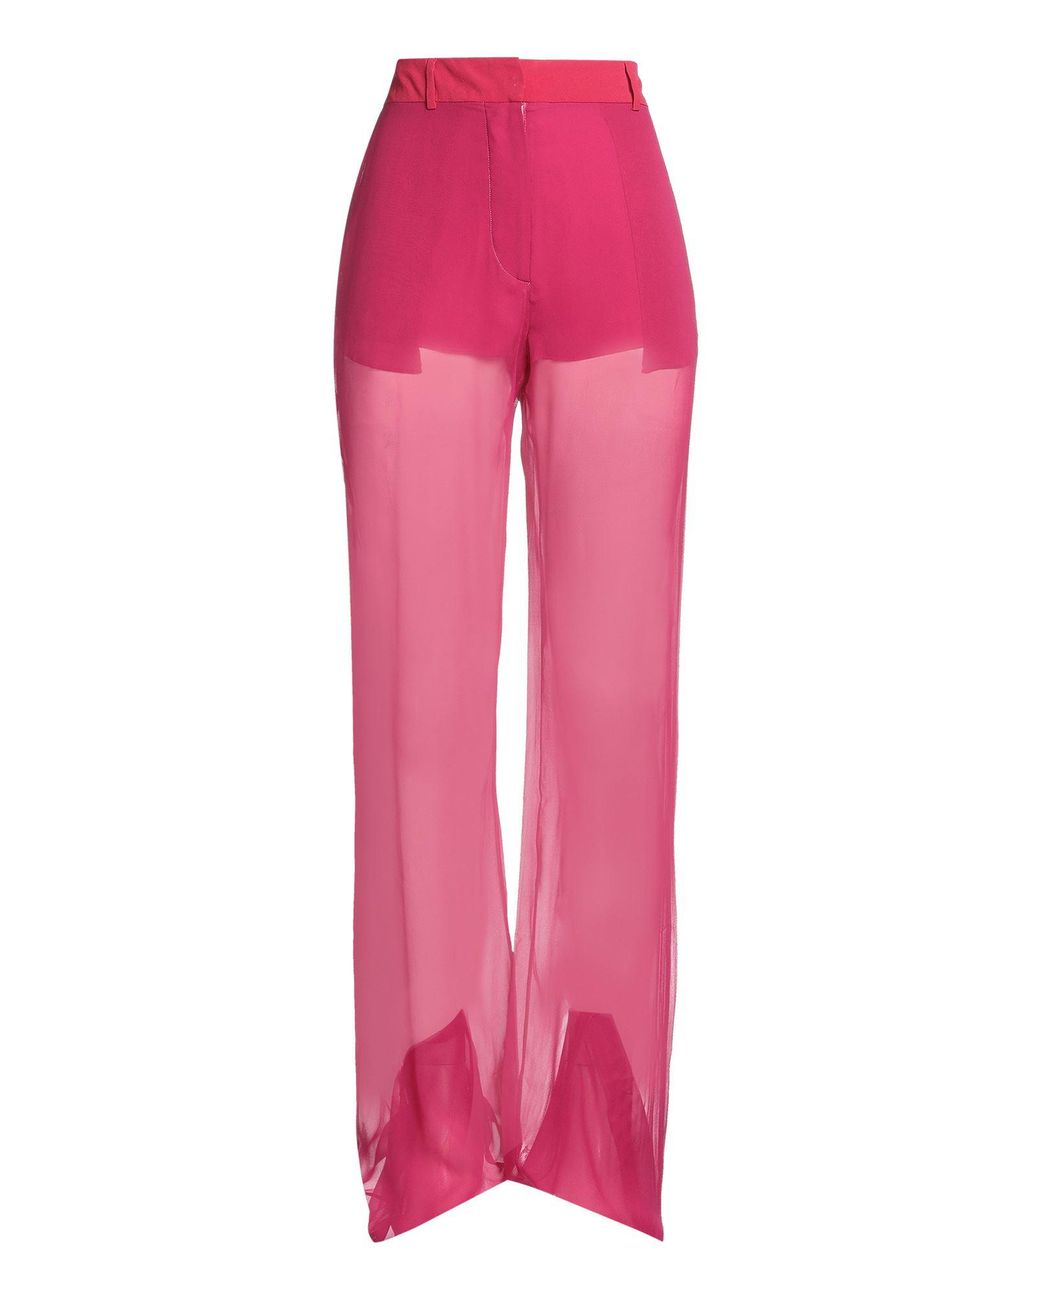 Flared leggings in pink - Nensi Dojaka